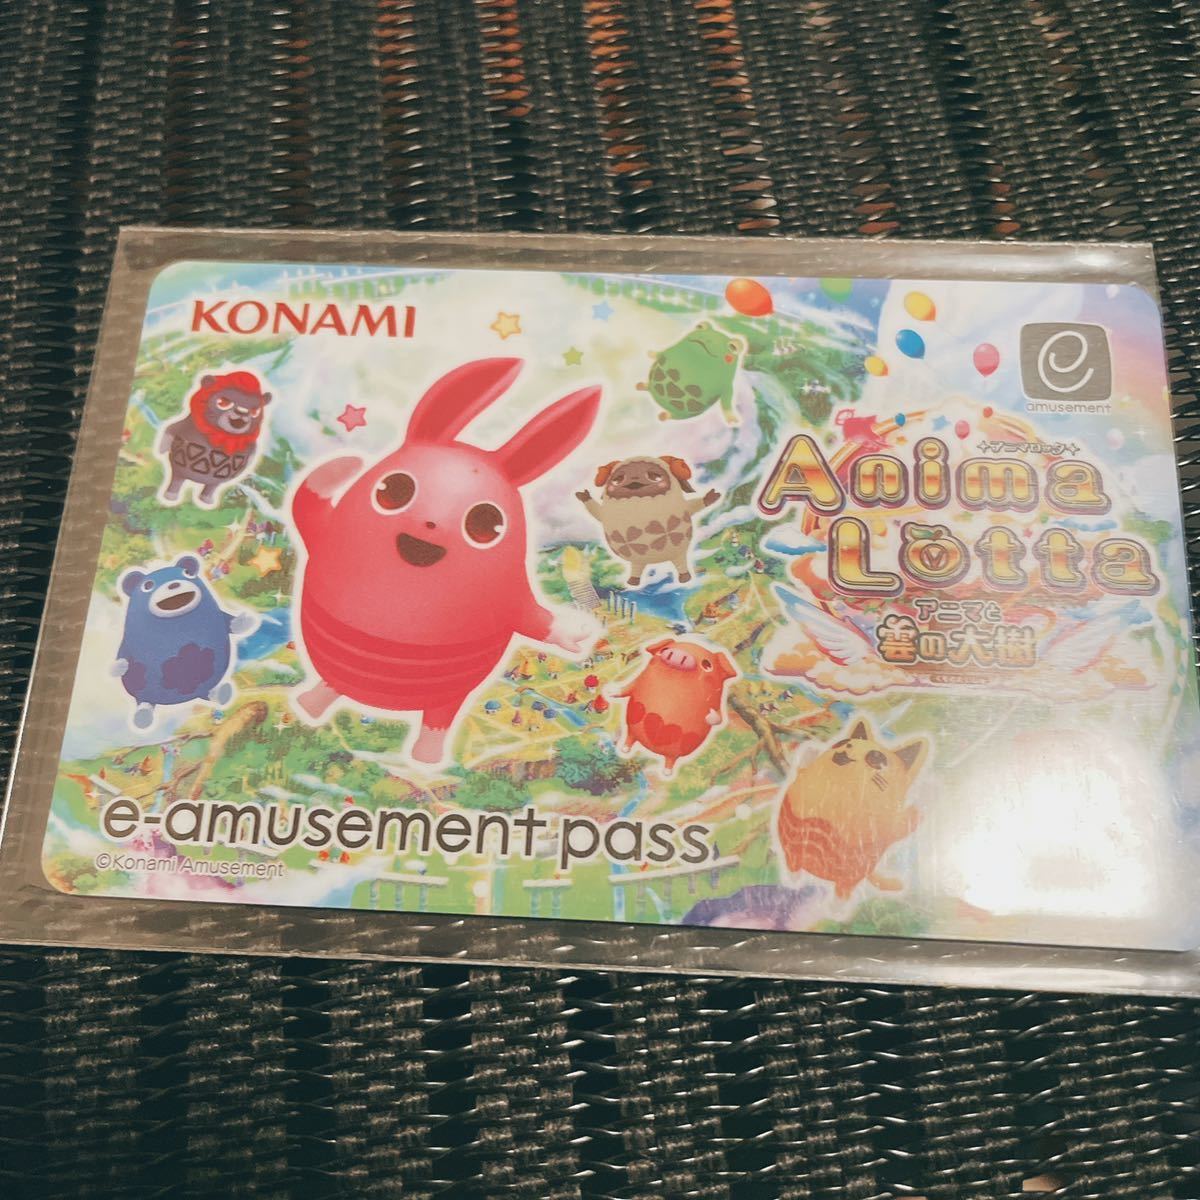 【アニマロッタ】 e-amusement pass メダルゲーム イーパス e-pass KONAMI コナミ カラコロッタの画像1